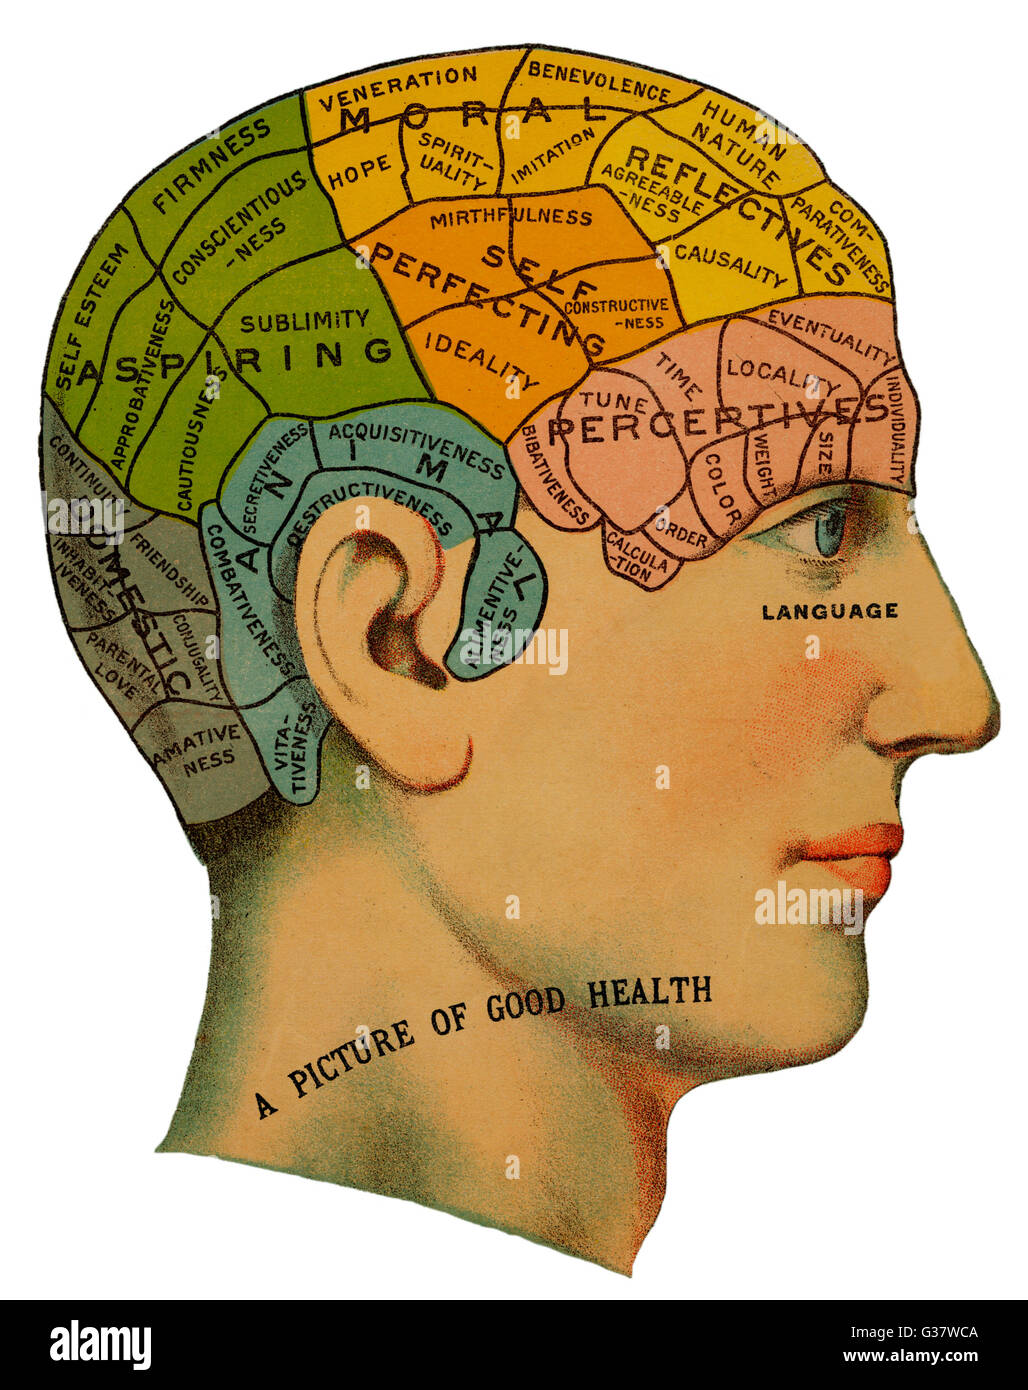 Ein phrenologische Kopf, zeigen die verschiedenen Kategorien des Gehirns, die vorhanden sind, sollte bei gesunden Menschen. Dazu gehören selbst scharfsinnig, aufstrebende und Tier Moral.     Datum: um 1870 Stockfoto